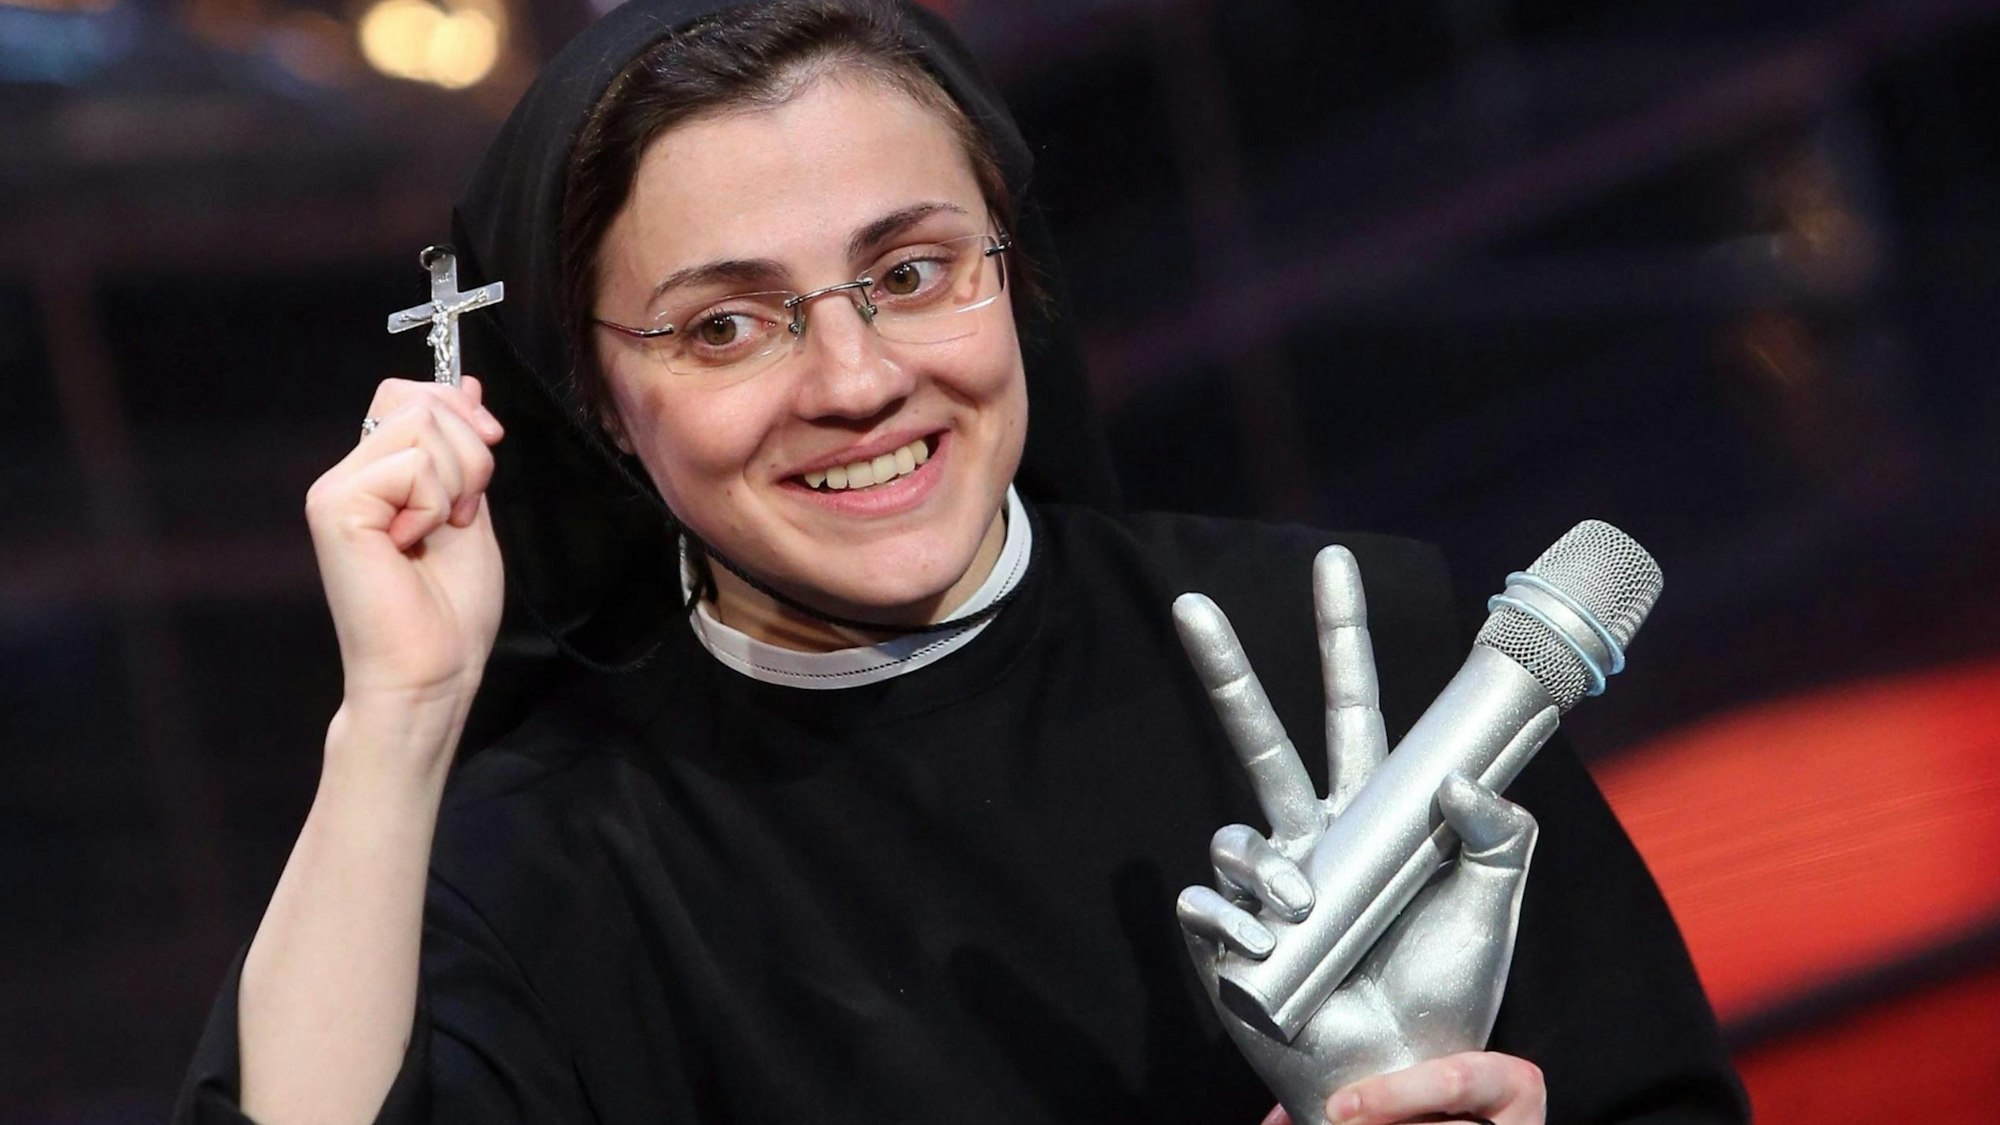 Die italienische Schwester Cristina Scuccia lächelt mit ihrem Preis in der Hand, nachdem sie das Finale des staatlichen RAI-Fernsehprogramms „The Voice of Italy“ in Mailand, Italien, am 05. Juni 2014 gewonnen hat. In der anderen Hand hält sie ein kleines Kruzifix hoch.